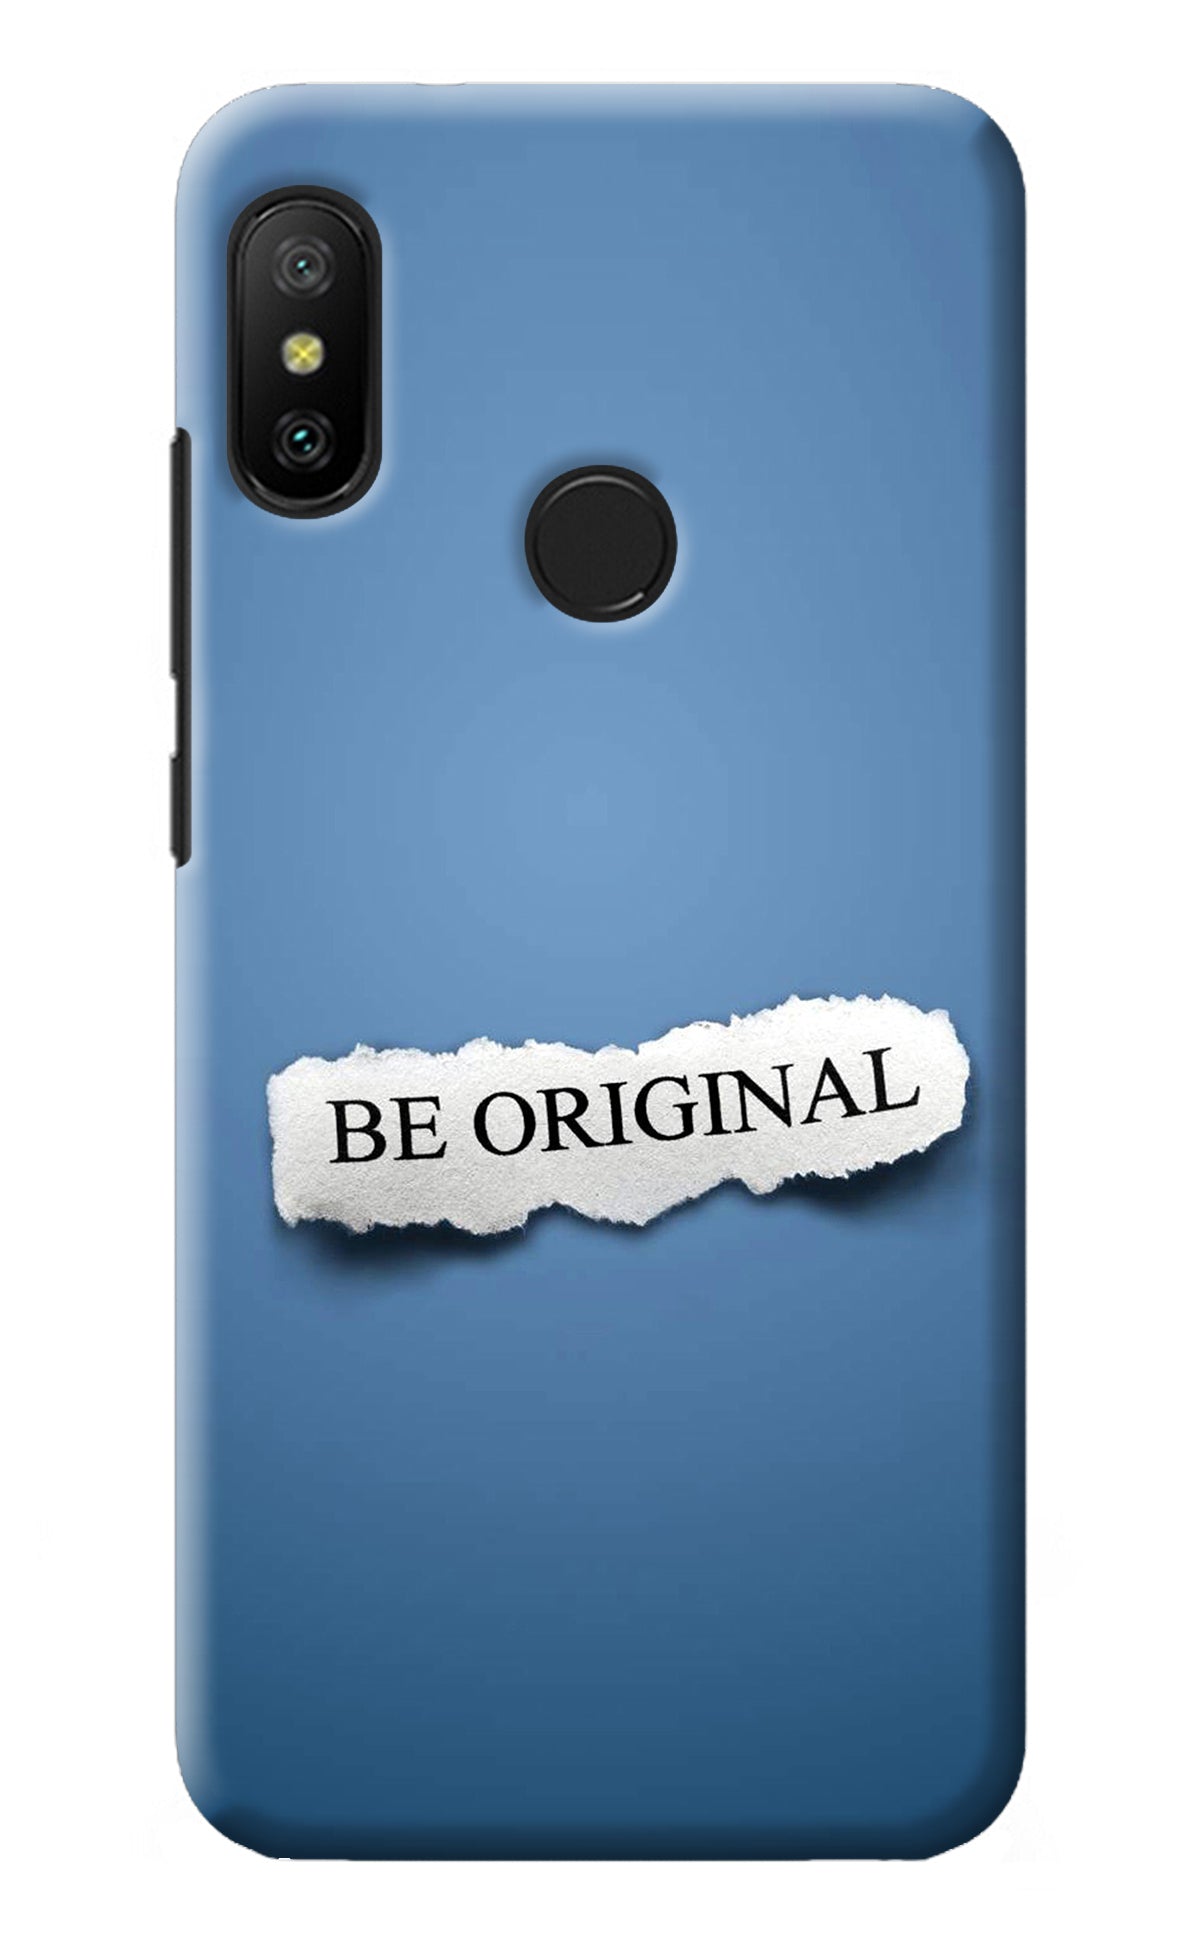 Be Original Redmi 6 Pro Back Cover